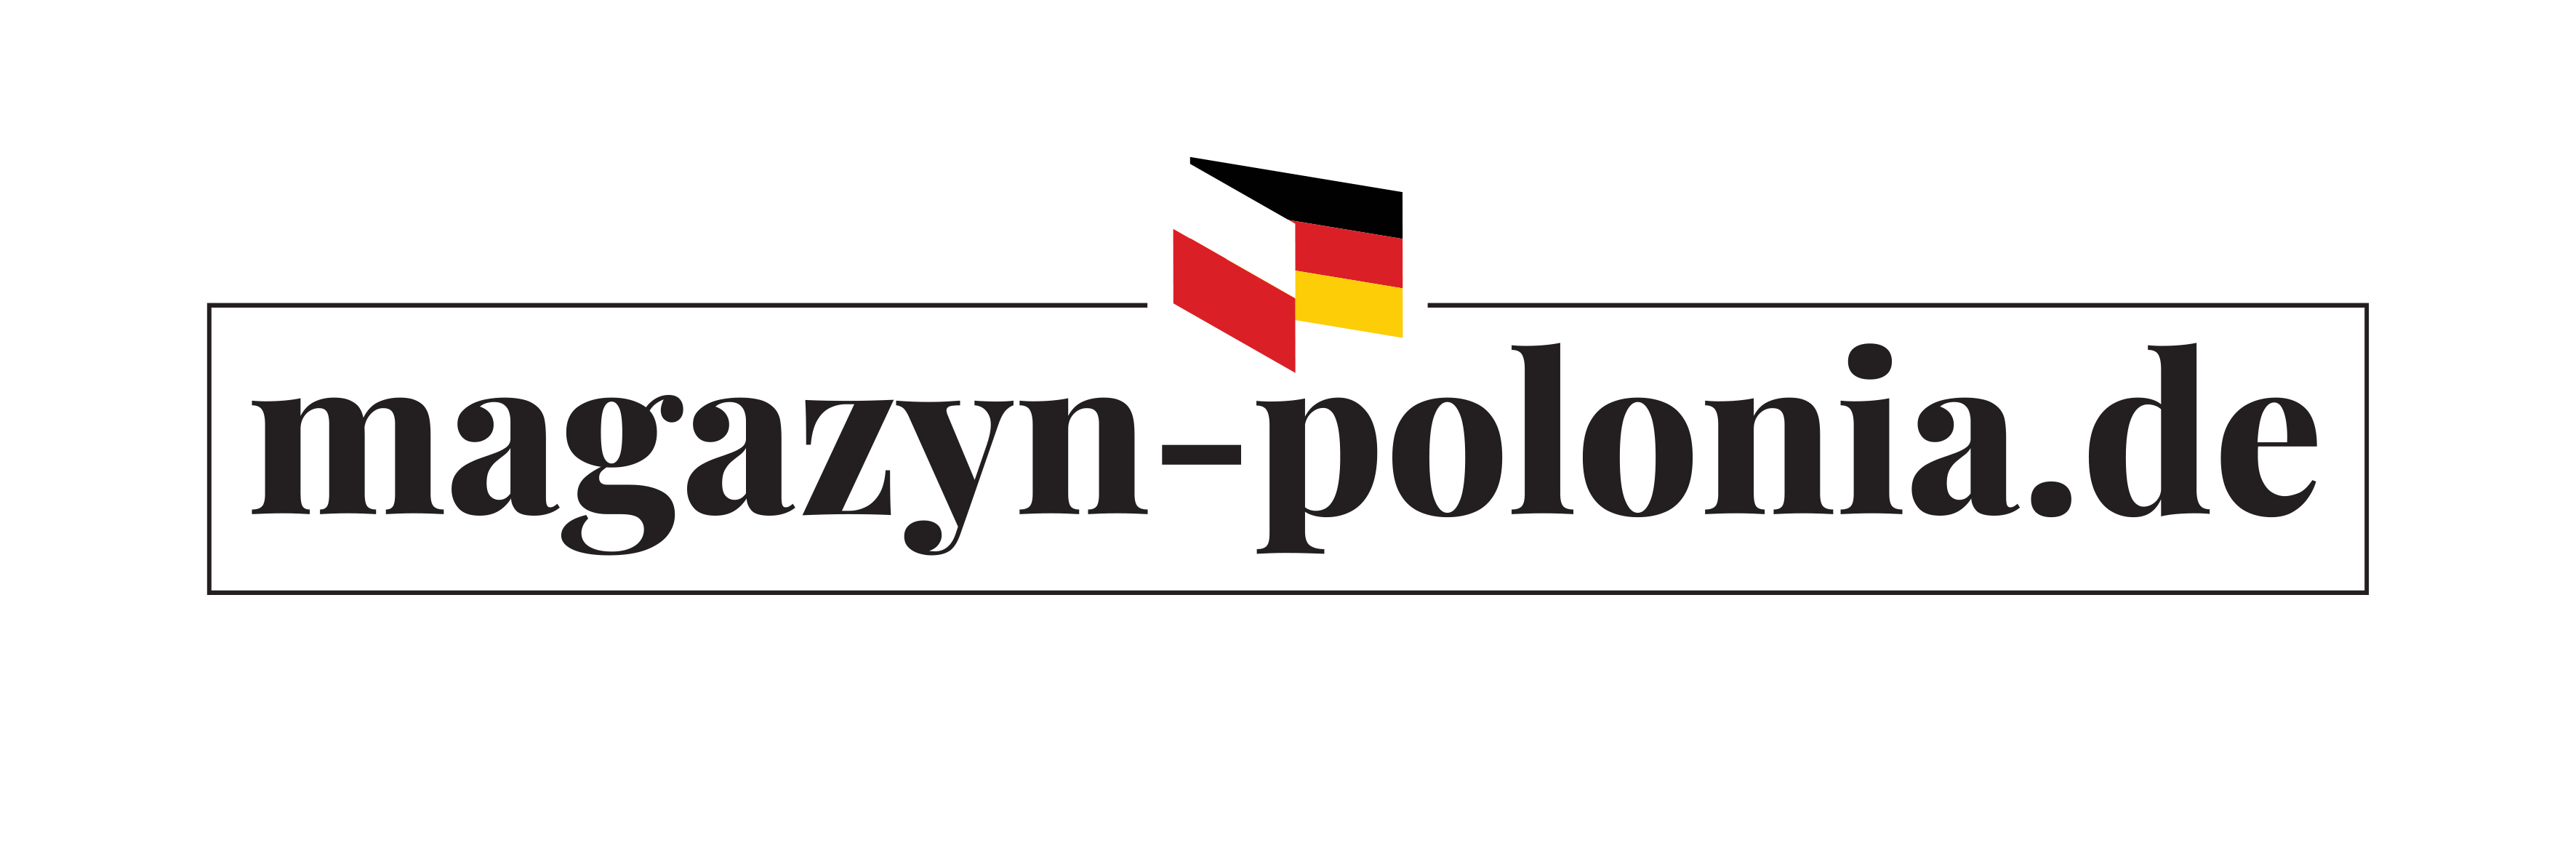 Magazyn Polonia – kwartalnik dla Polaków w Niemczech 